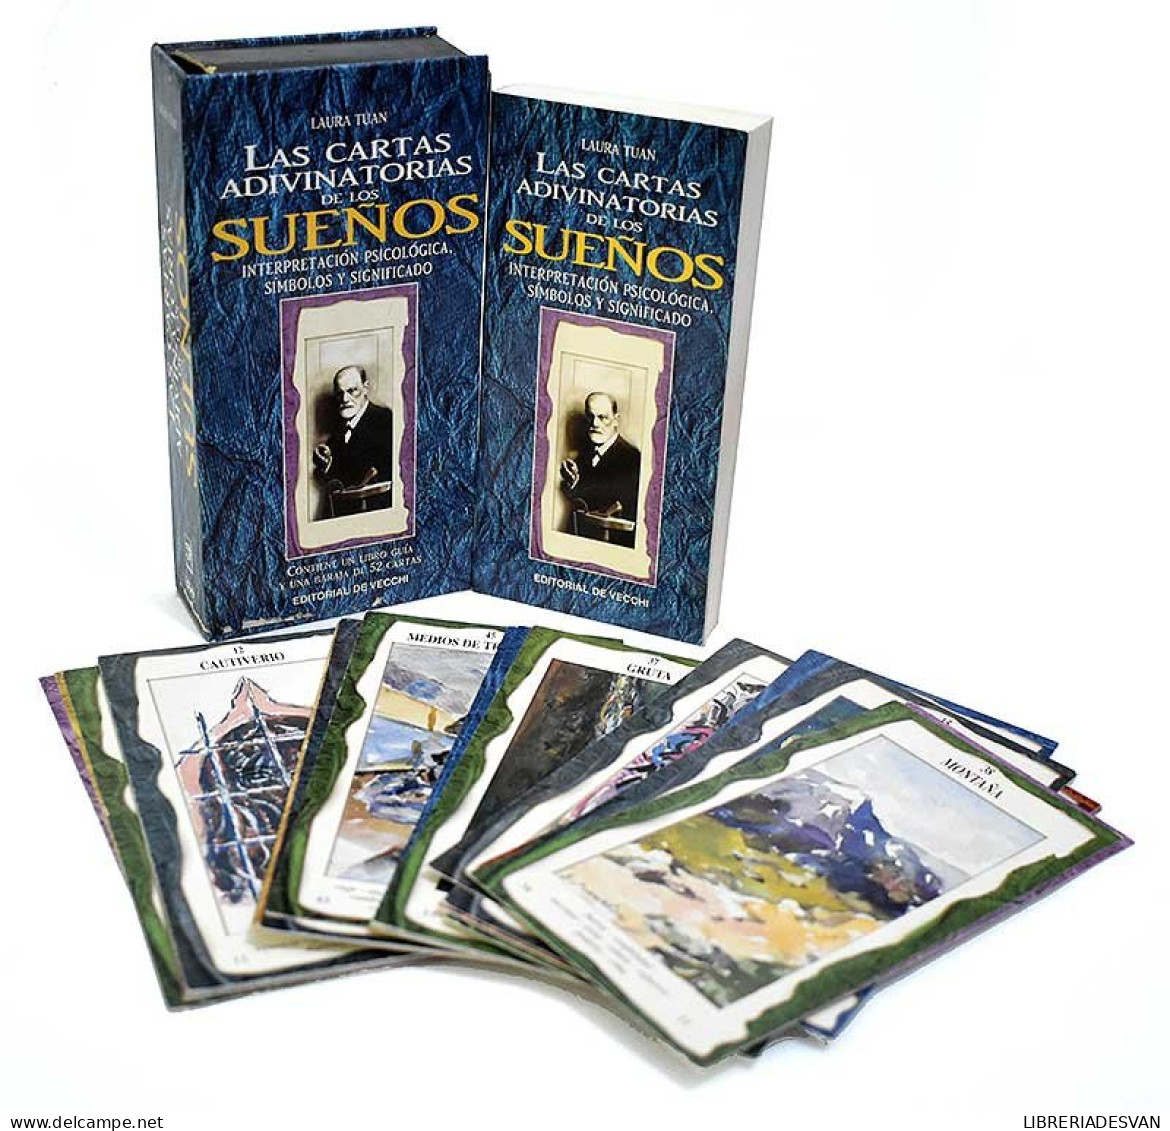 Las Cartas Adivinatorias De Los Sueños. Libro + Baraja - Laura Tuan - Playing Cards (classic)